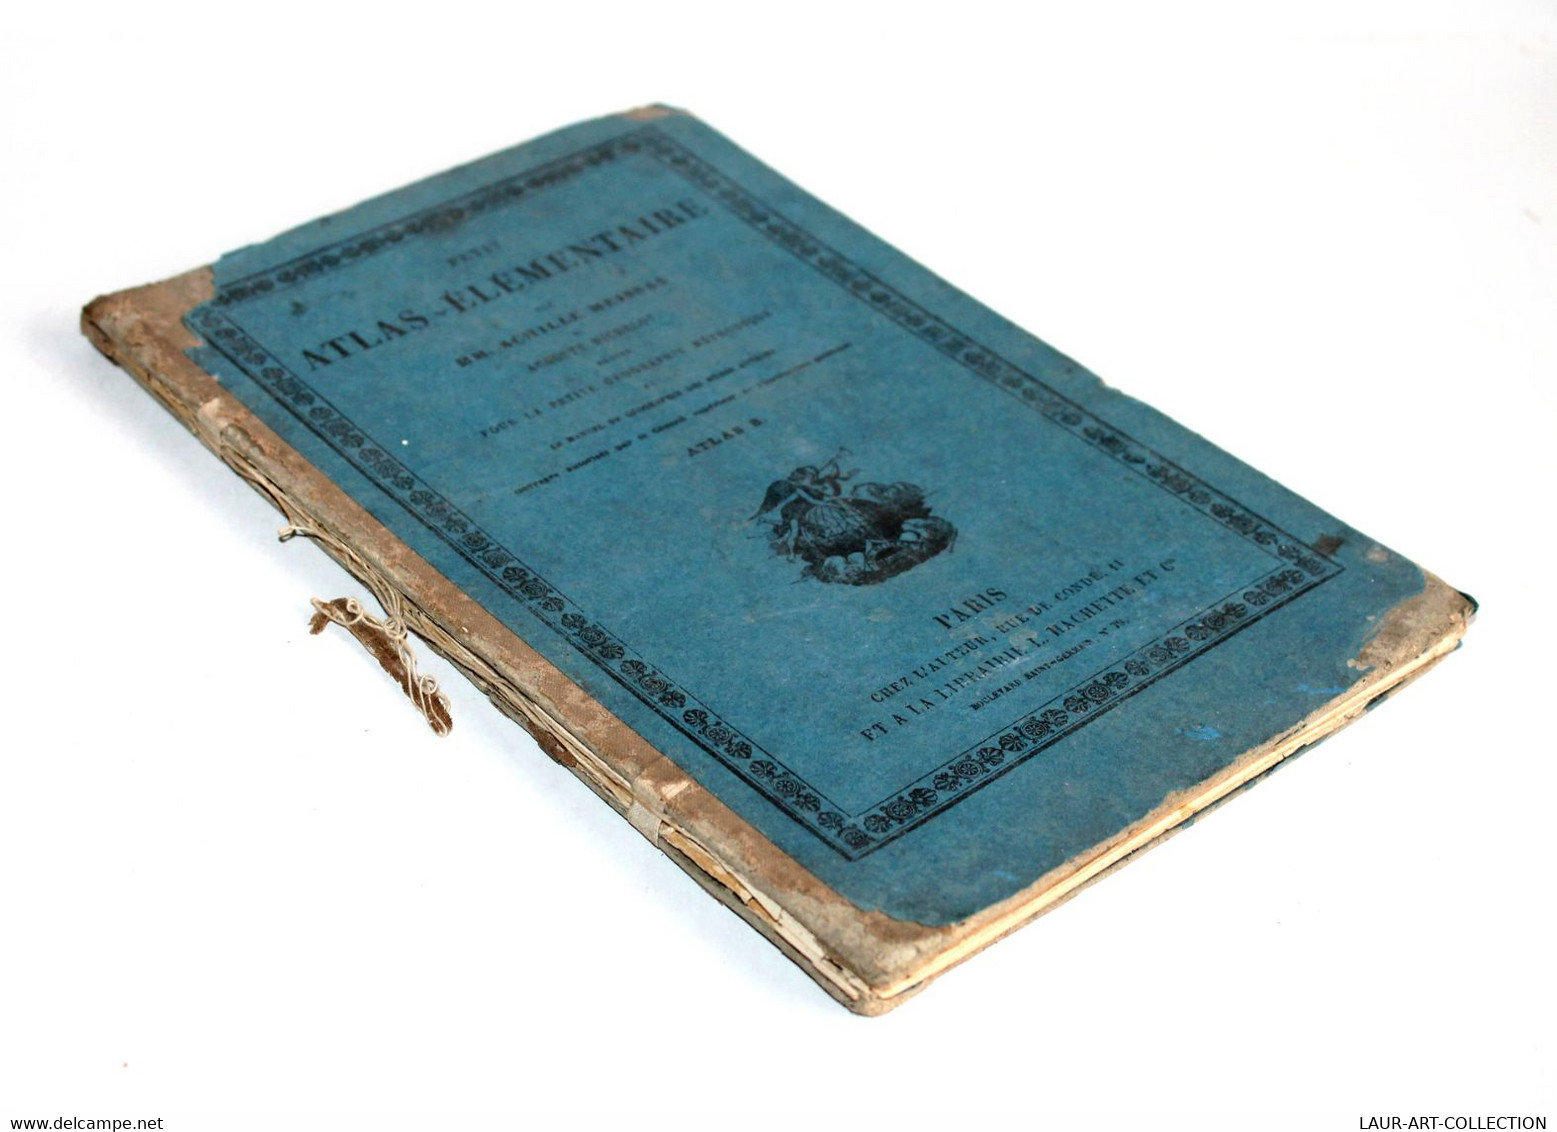 PETIT ATLAS ELEMENTAIRE De MEISSAS, MICHELOT GEOGRAPHIE METHODIQUE 1874 HACHETTE / ANCIEN LIVRE DE COLLECTION (2301.455) - Kaarten & Atlas